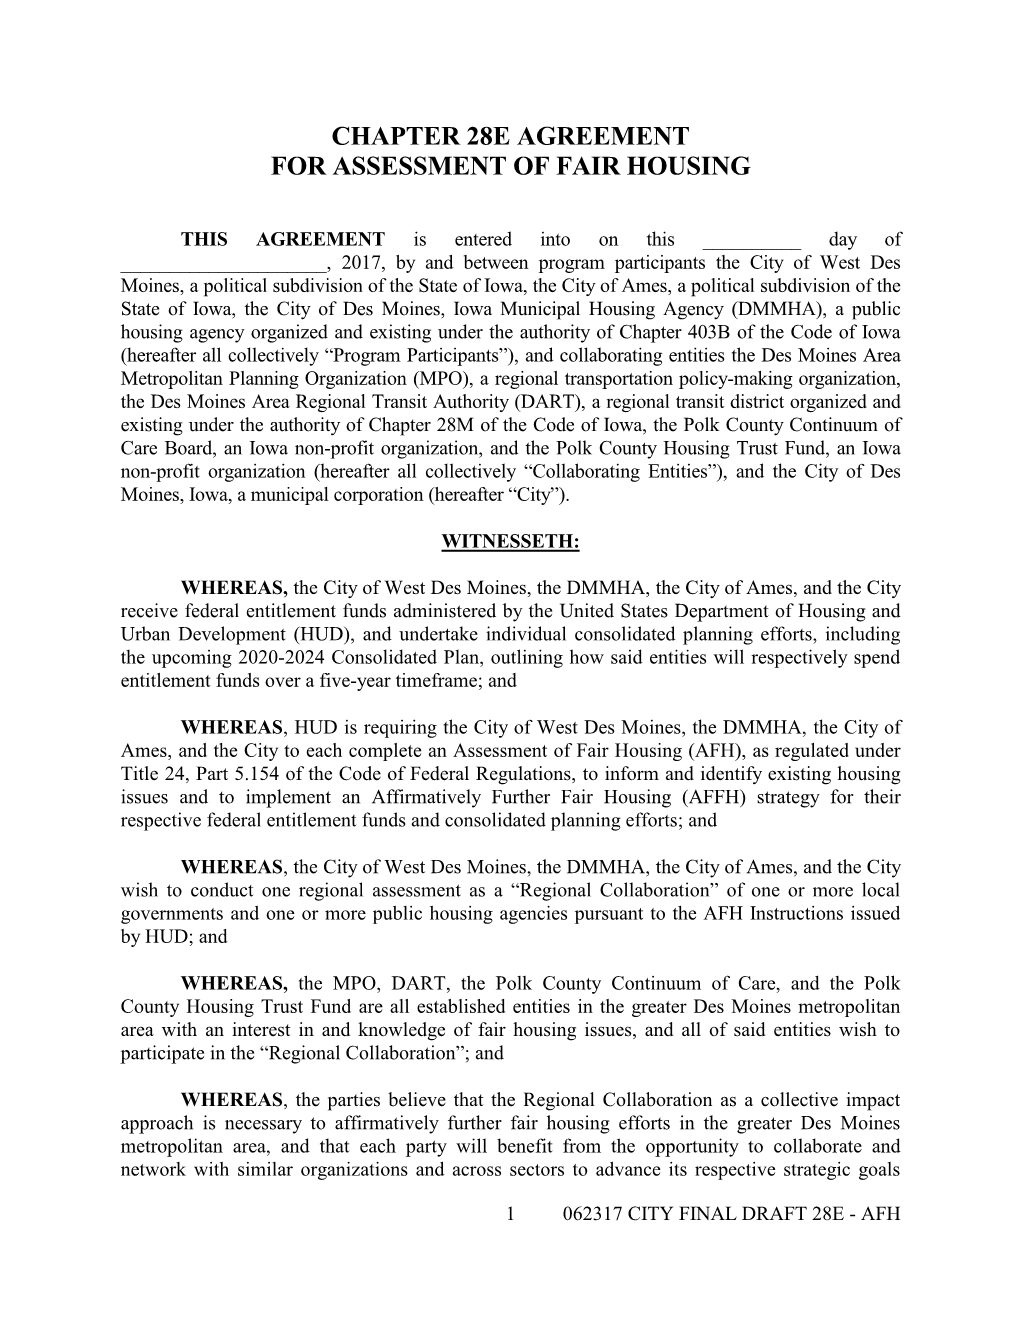 Chapter 28E Agreement for Assessment of Fair Housing